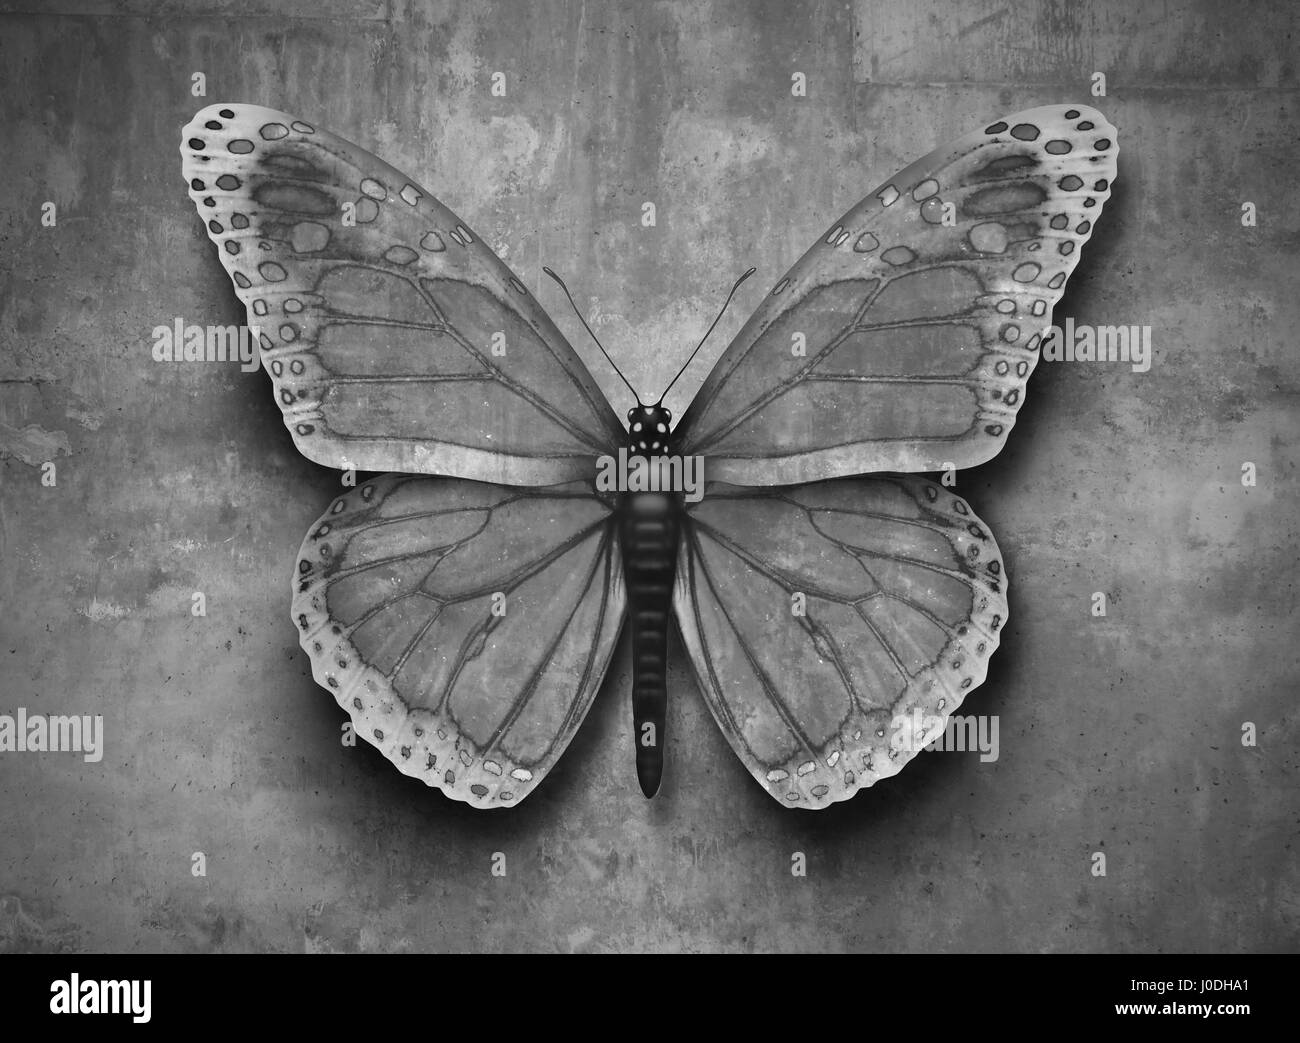 Le mélange de concept ou conforme à l'environnement et l'adaptation au nouvel environnement comme un papillon sur un mur avec une texture de camouflage pour masquer . Banque D'Images